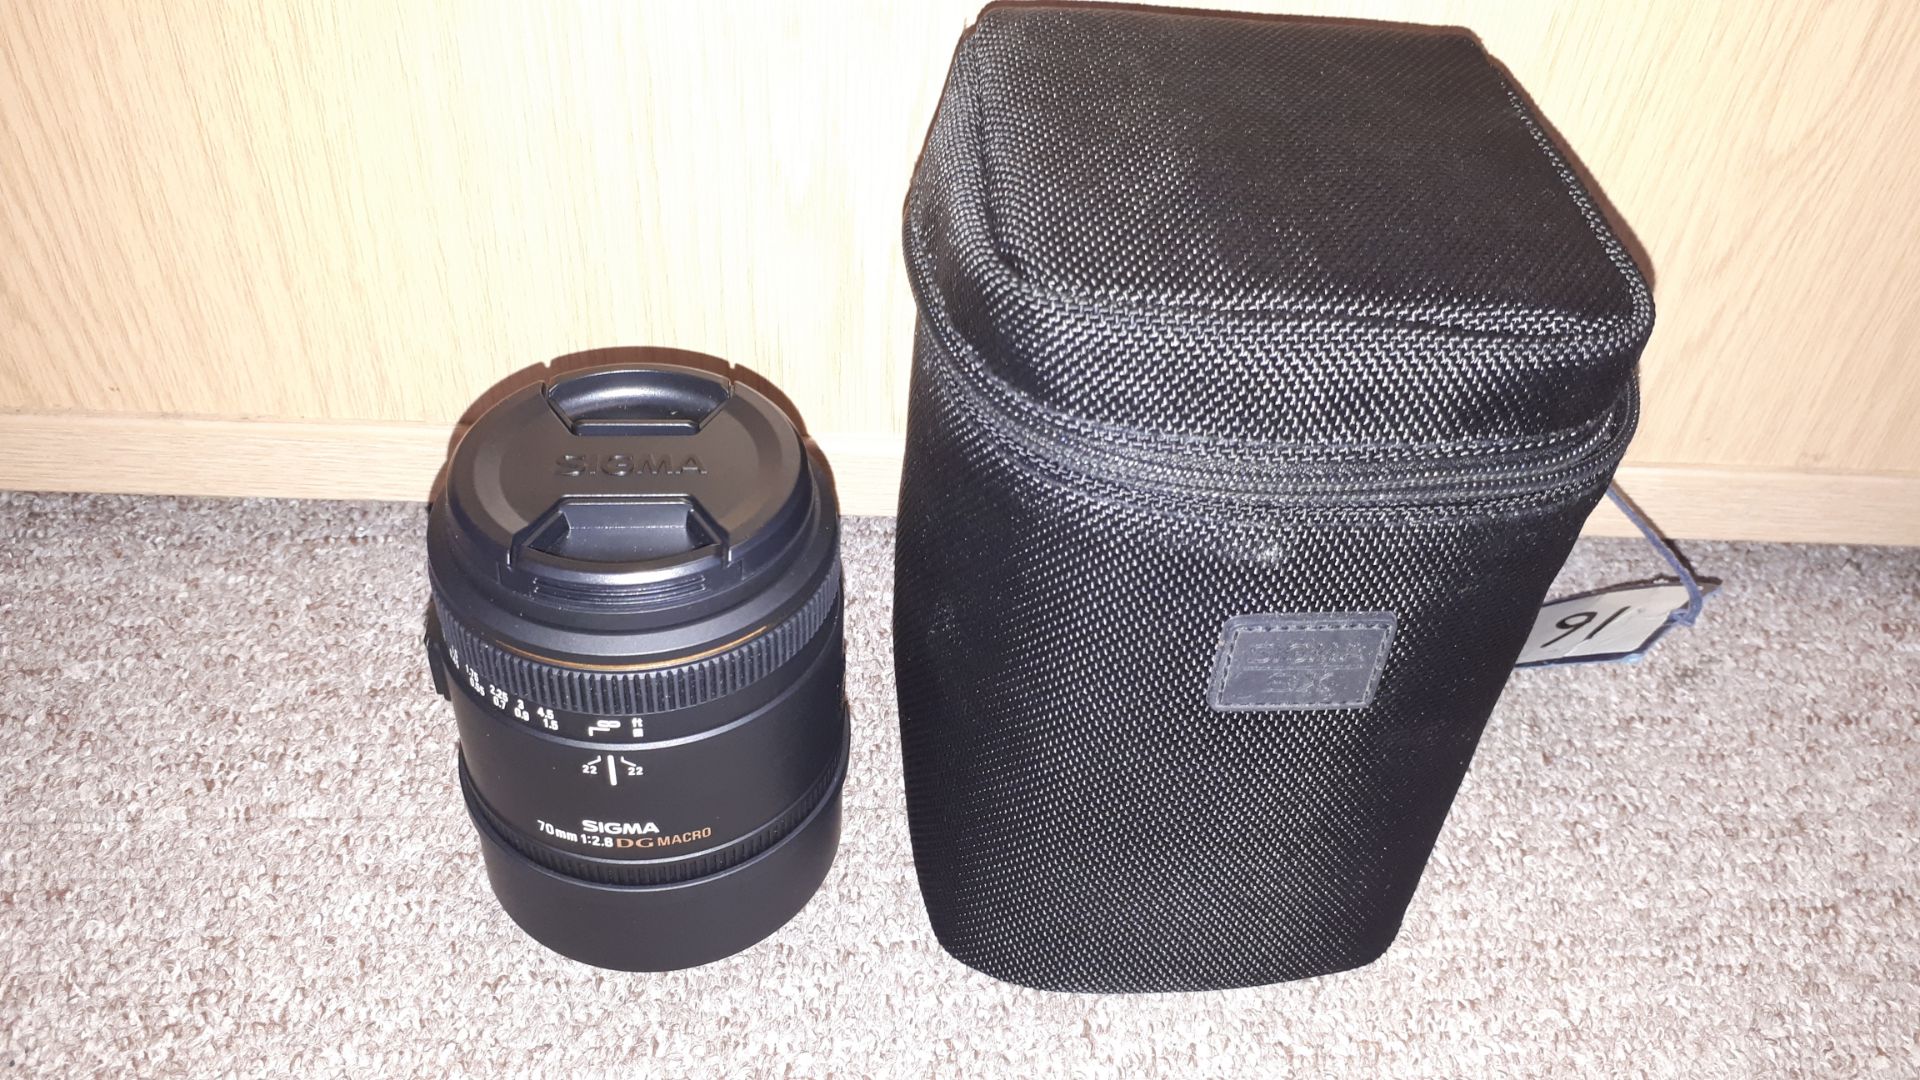 Sigma 70mm 1:2.8 DG Macro camera lens